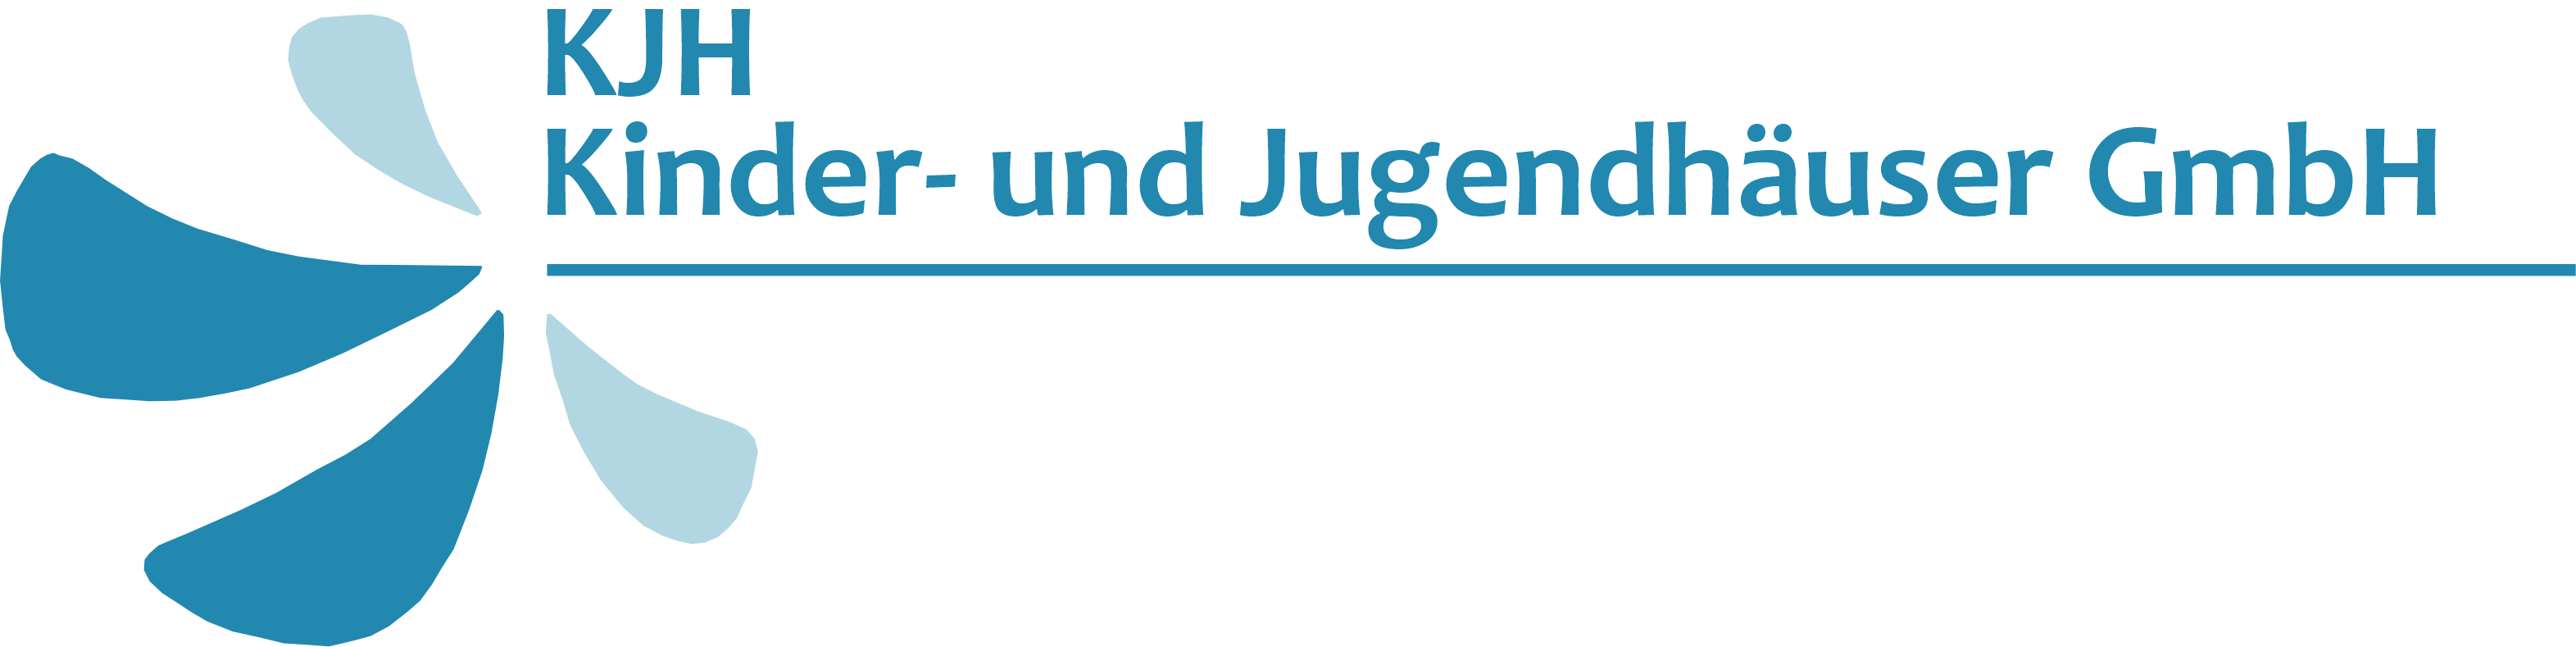 Kinder und Jugendhäuser GmbH